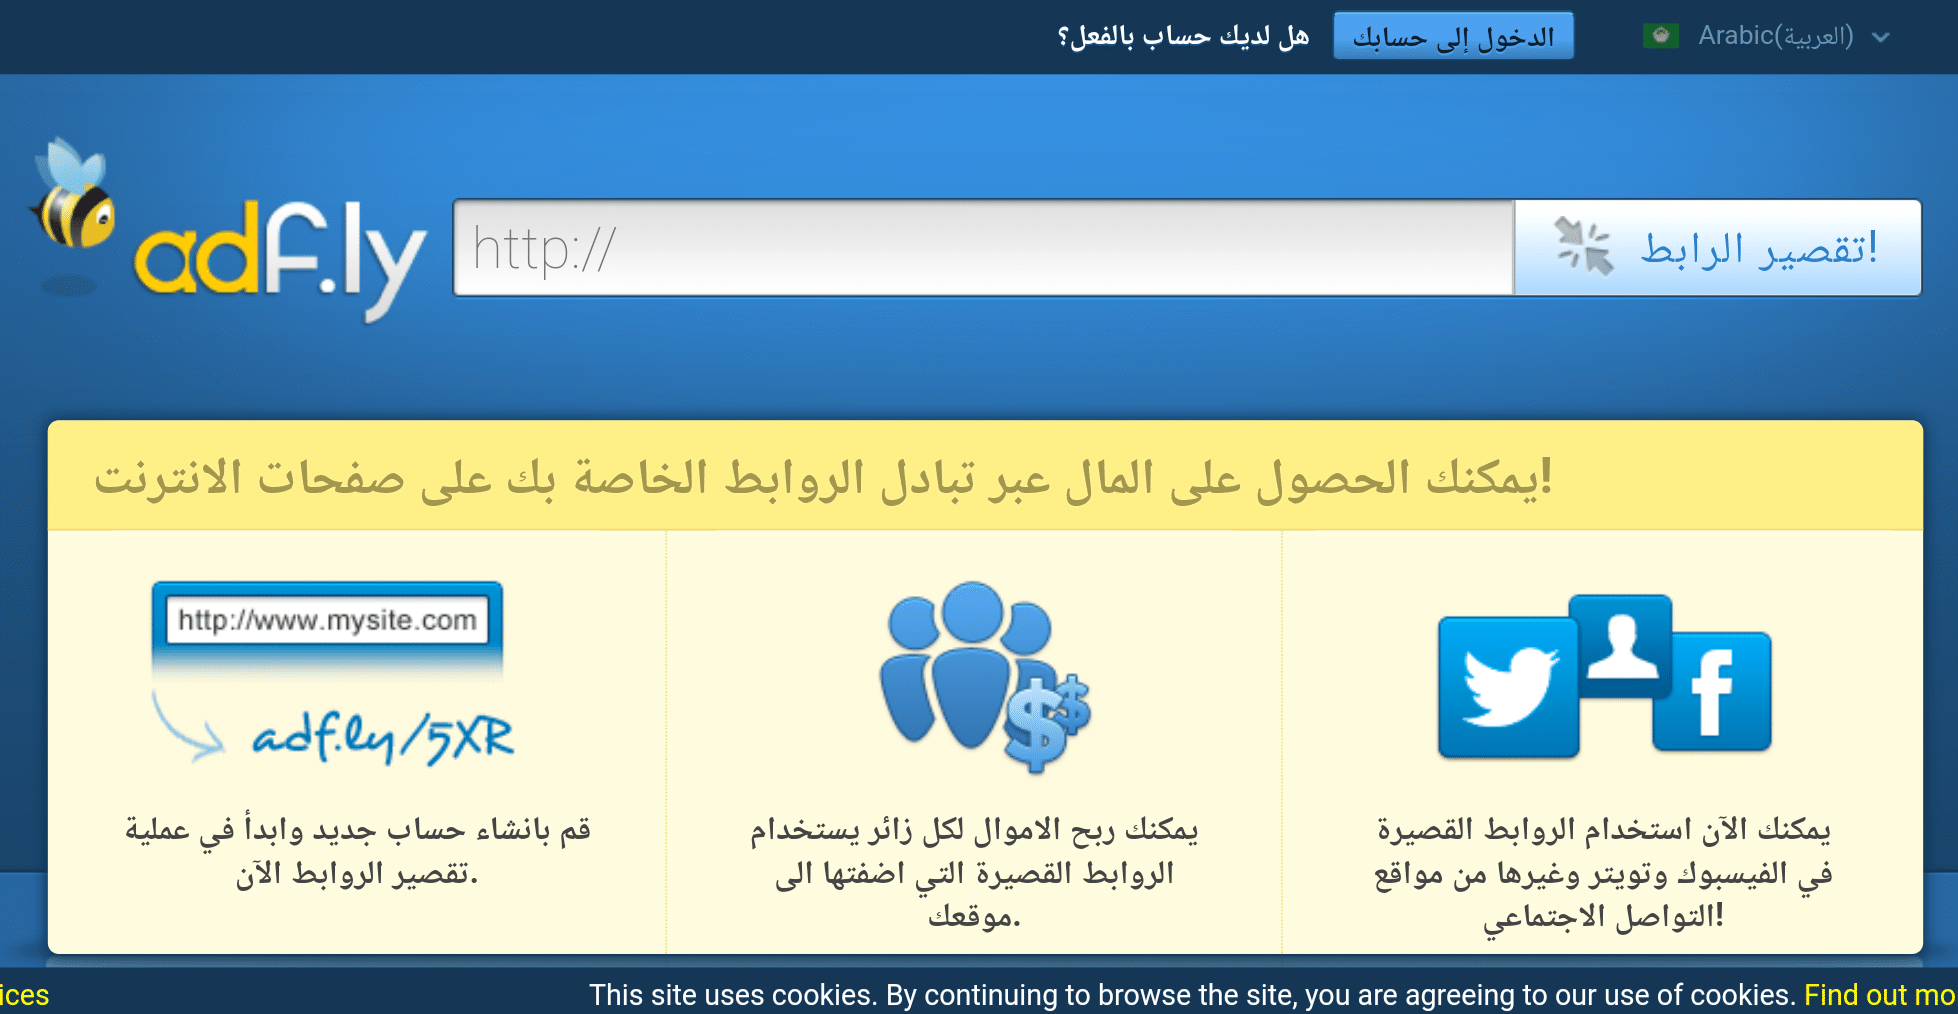 منصة Adf.ly التي تدعم اللغة العربية